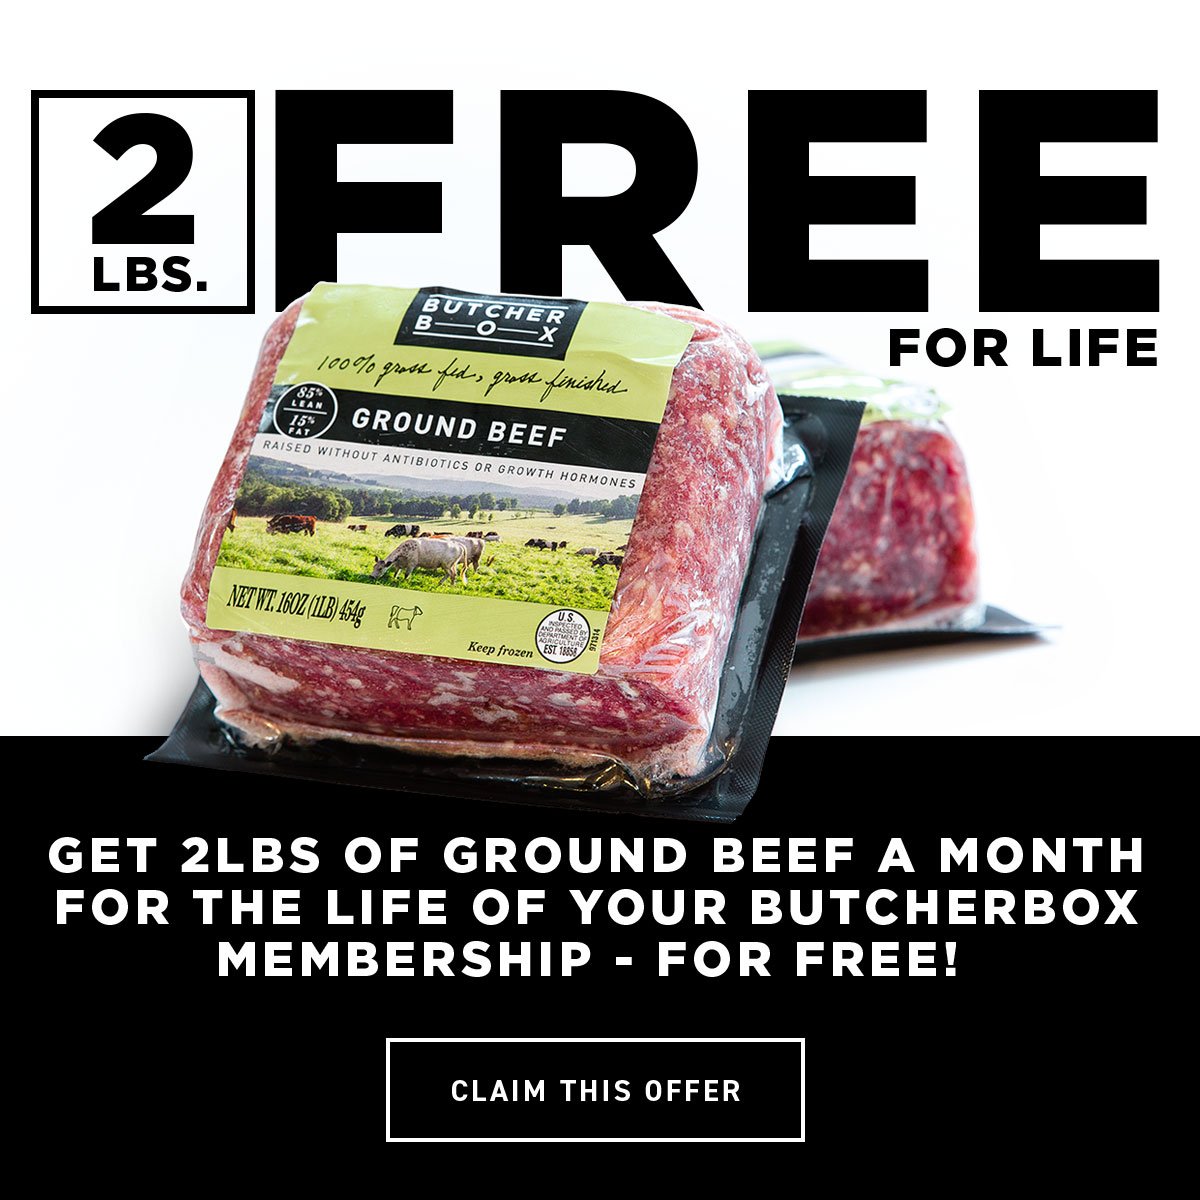 Butcher Box Coupon 2lbs Of Ground Beef For Life Msa